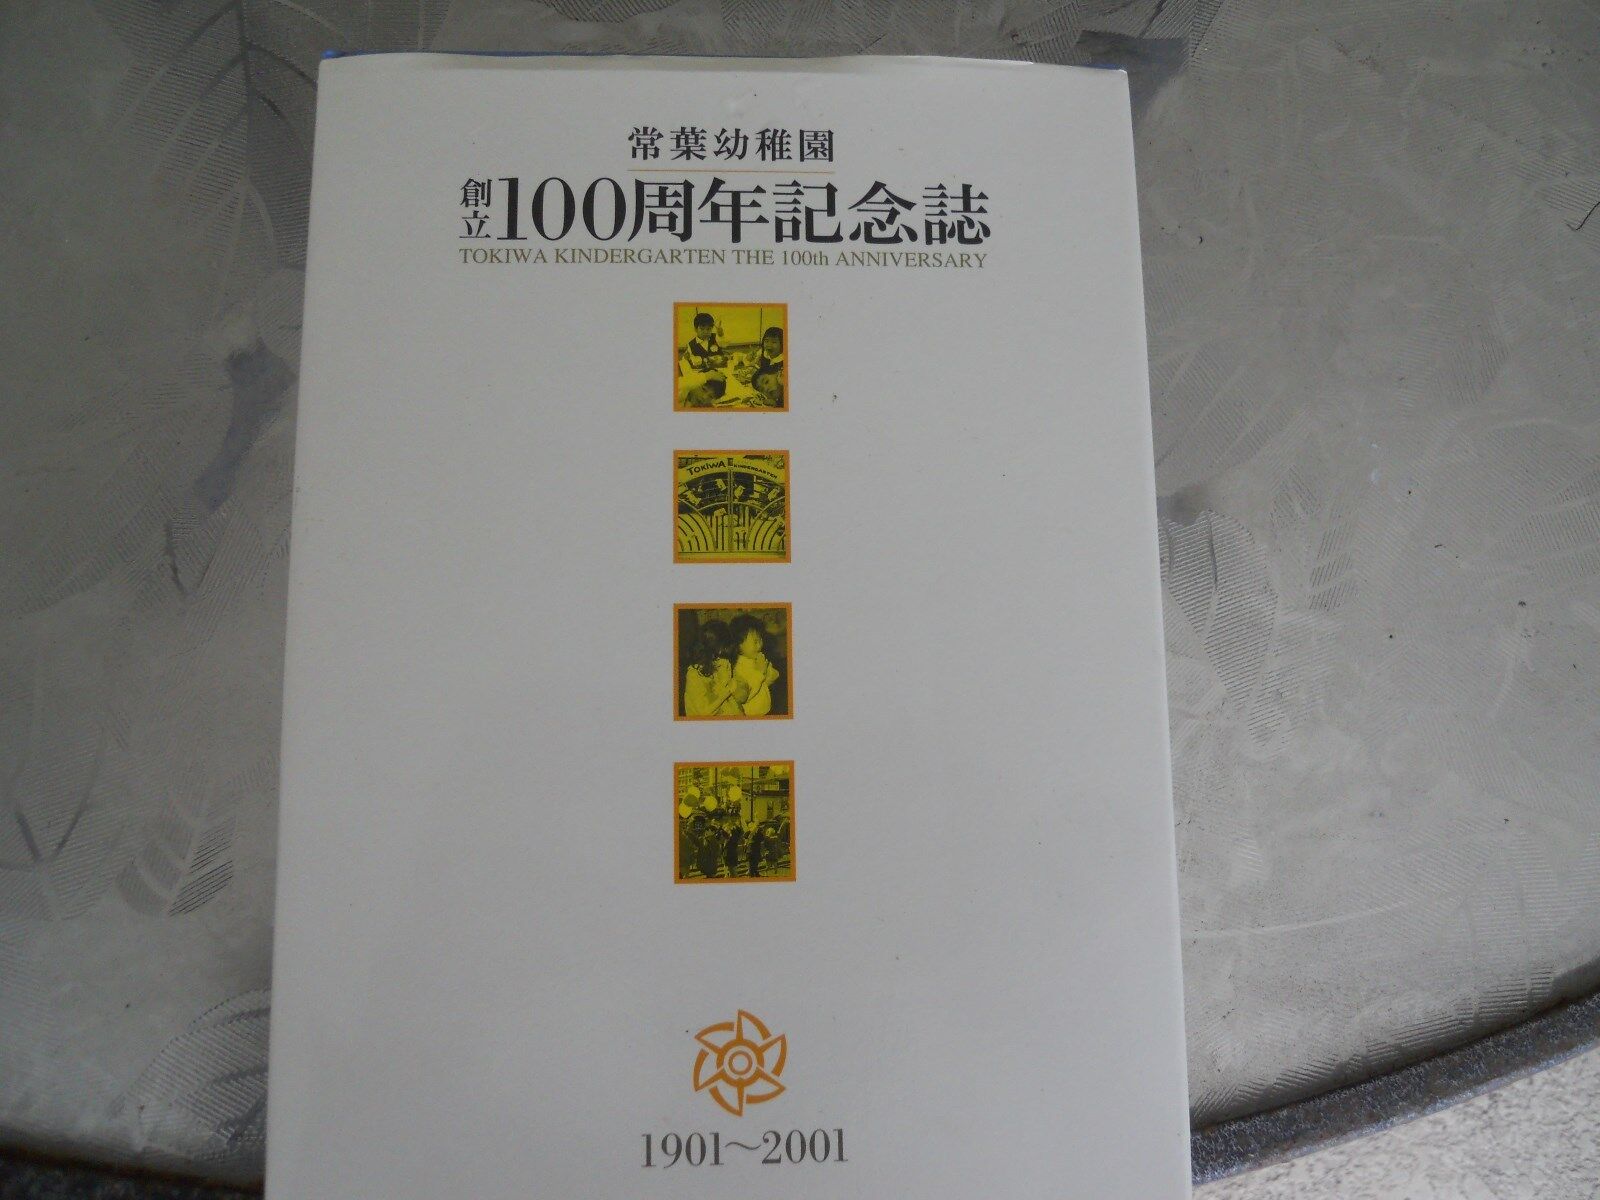 TOKIWA KINDERGARTEN THE 100TH ANNIVERSARY 1901-2001 YEARBOOK